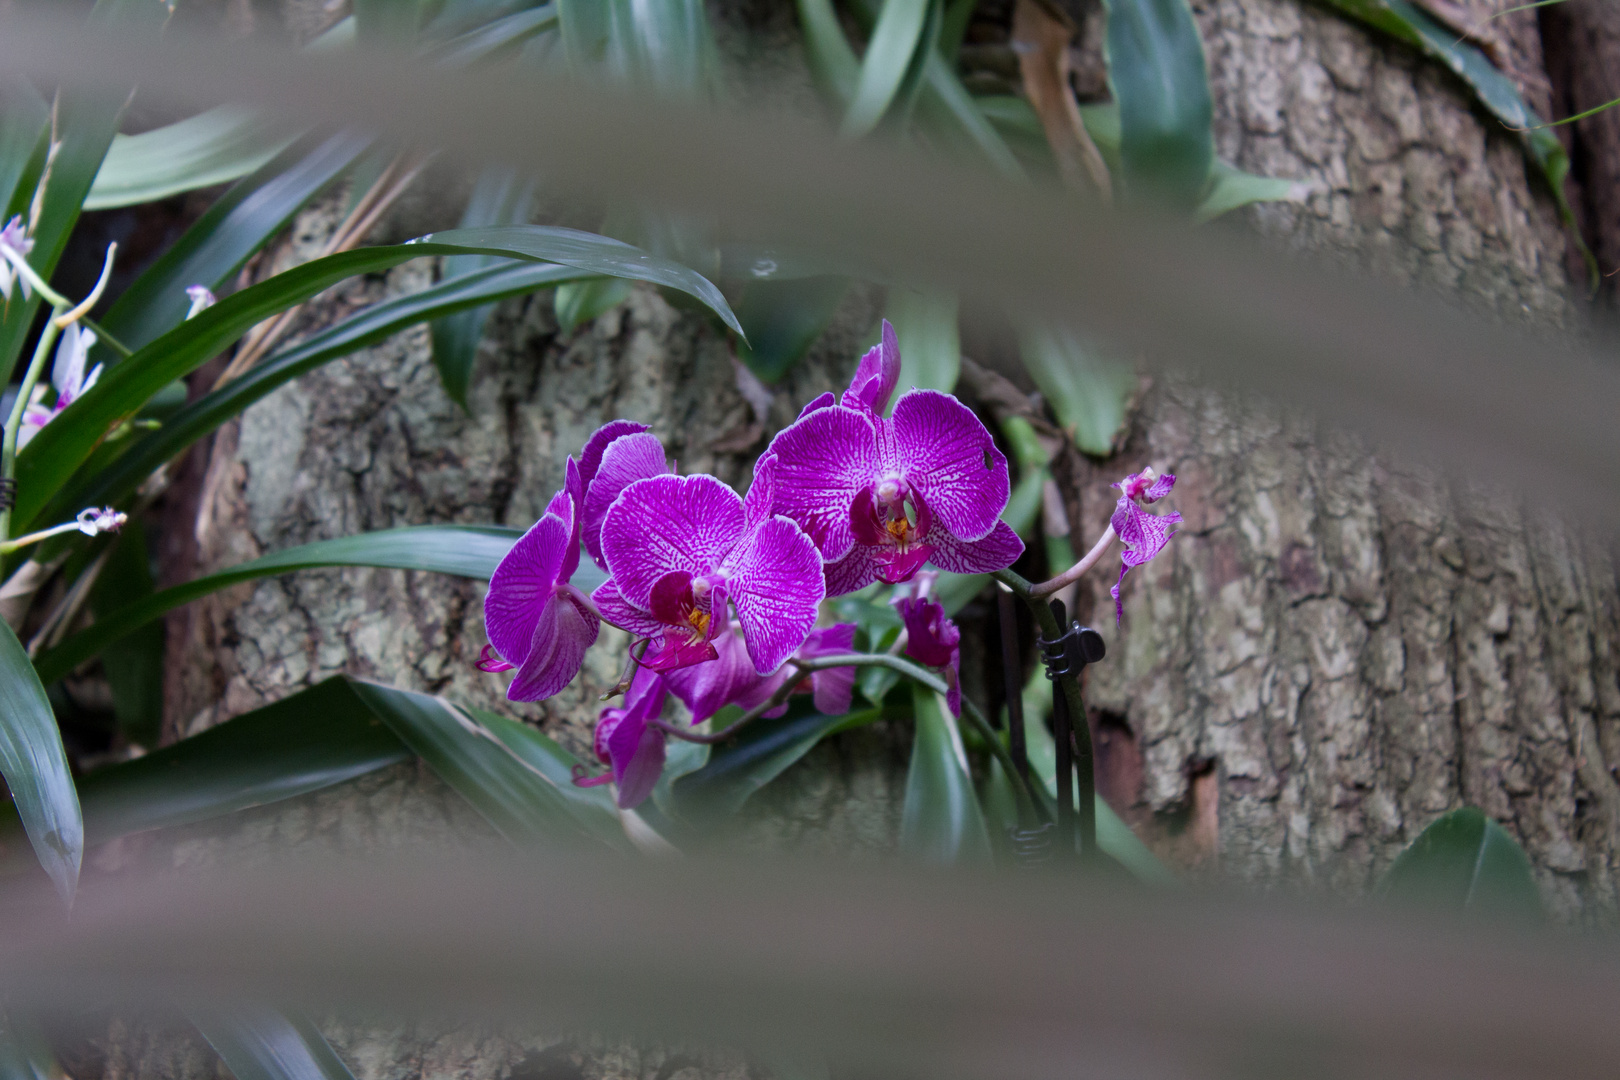 und noch eine weitere Orchidee aus der Biosphäre Potsdam